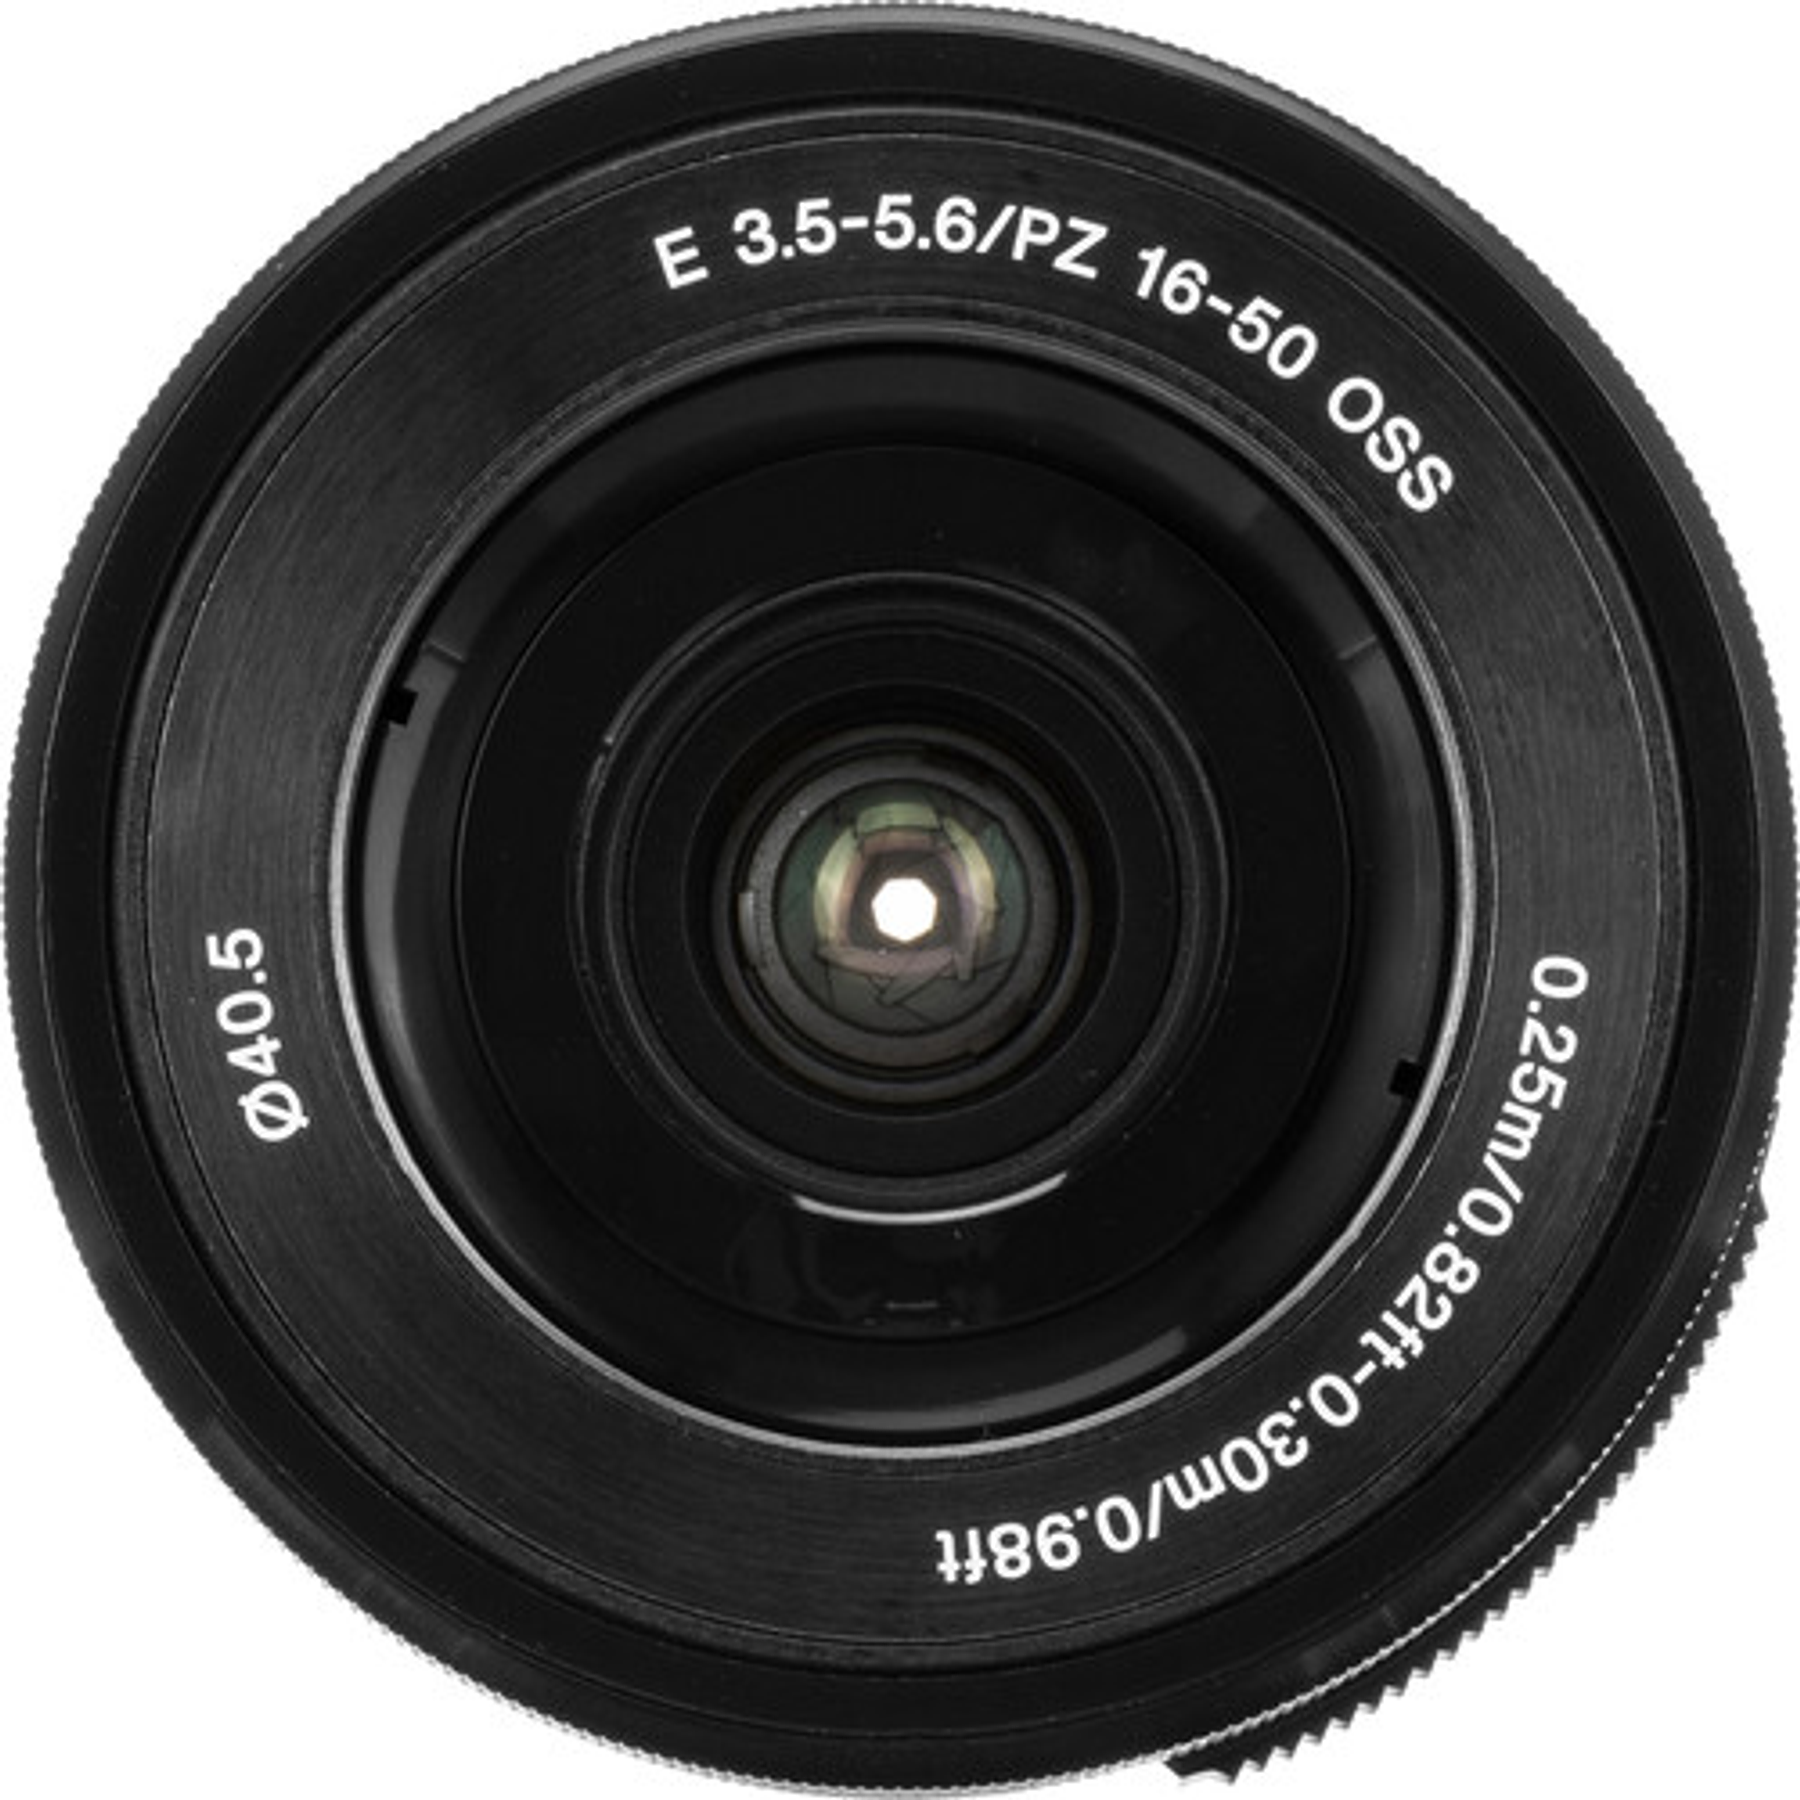 Sony 16-50mm f3.5-5.6 OSS PZ E